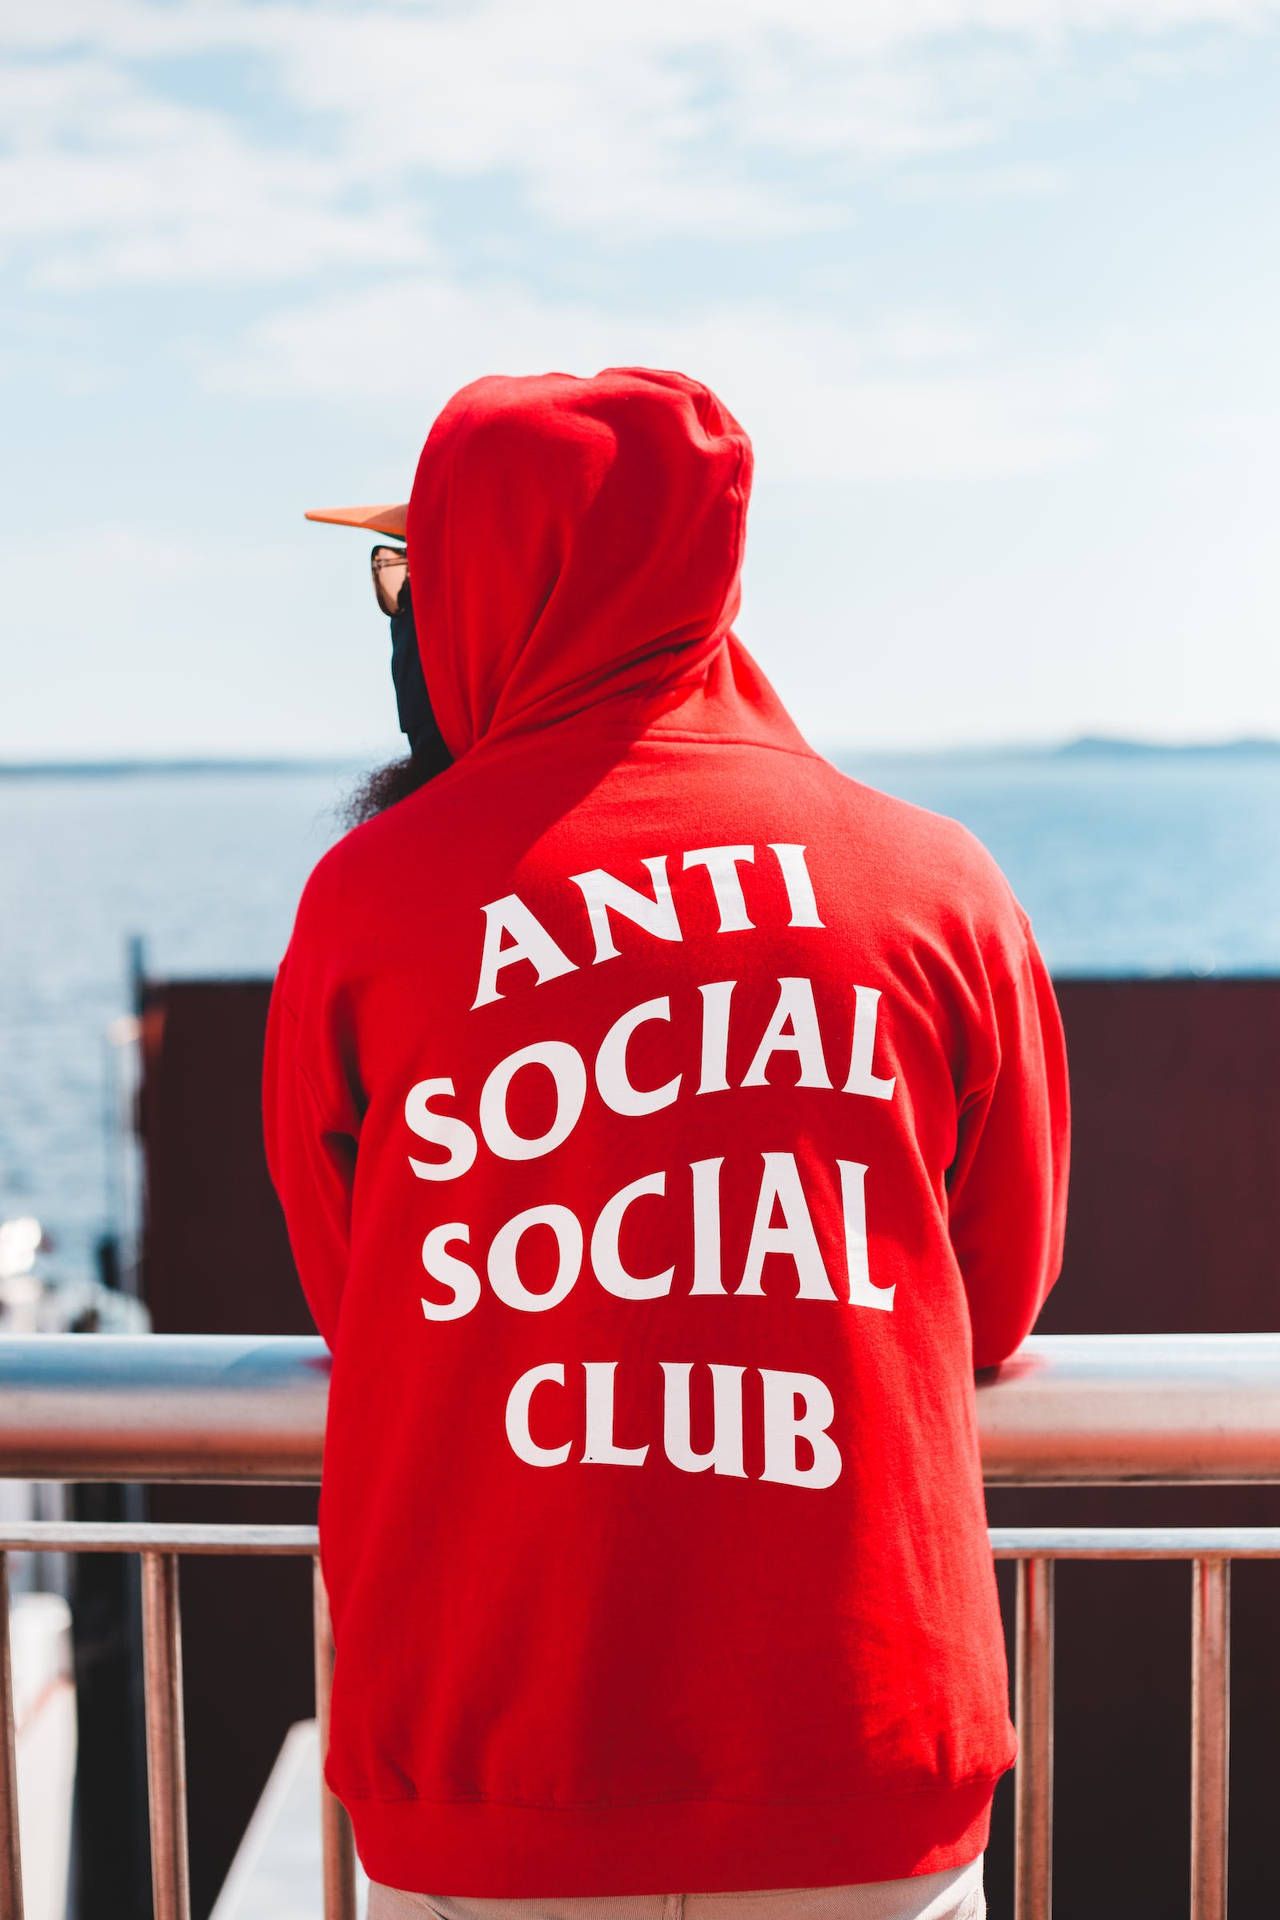 Free Anti Social Social Club Wallpaper Downloads, Anti Social Social Club Wallpaper for FREE